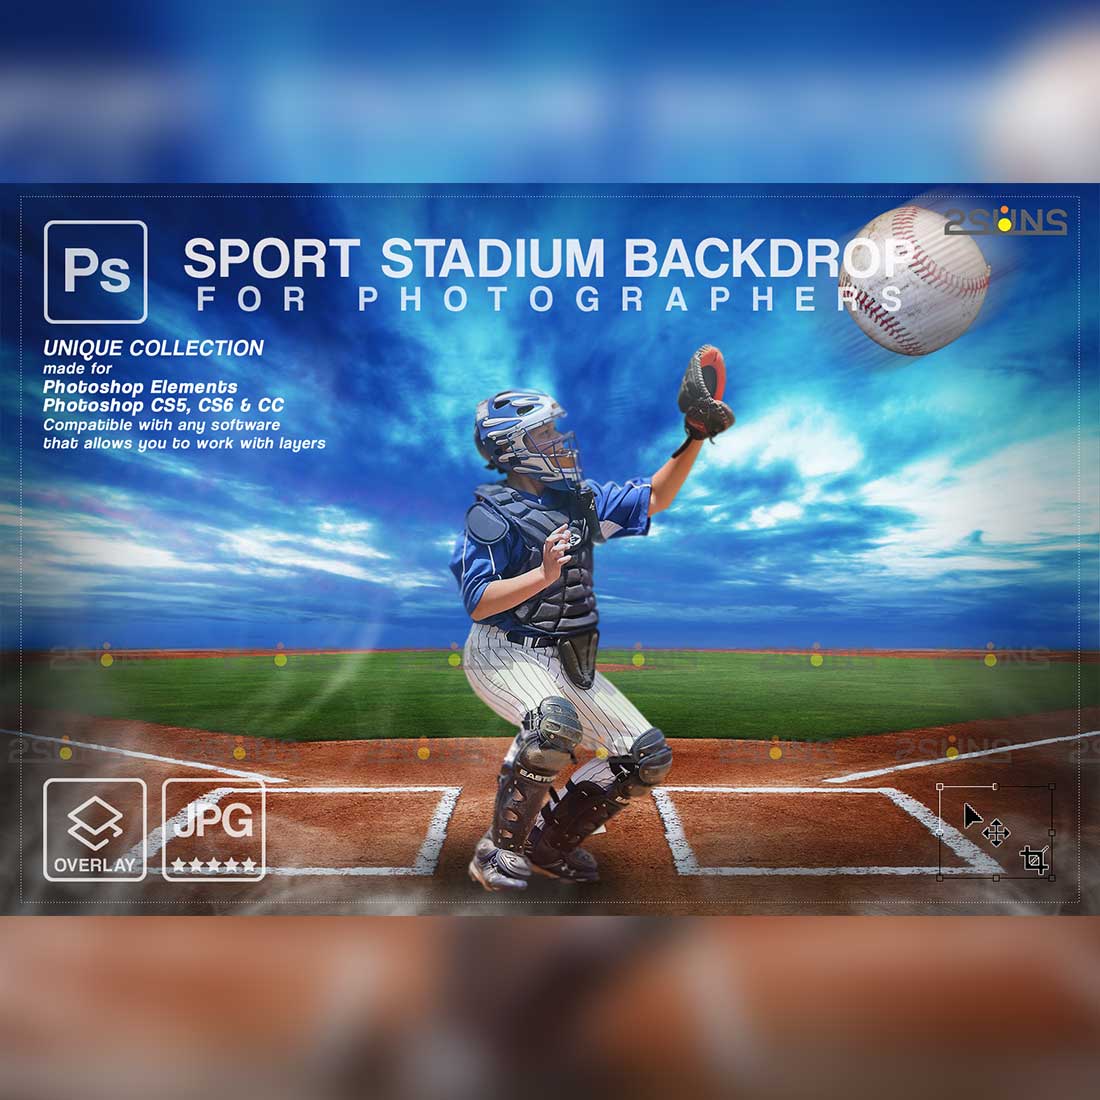 Baseball Amazing Backdrop Sports Digital Background Cover Image.